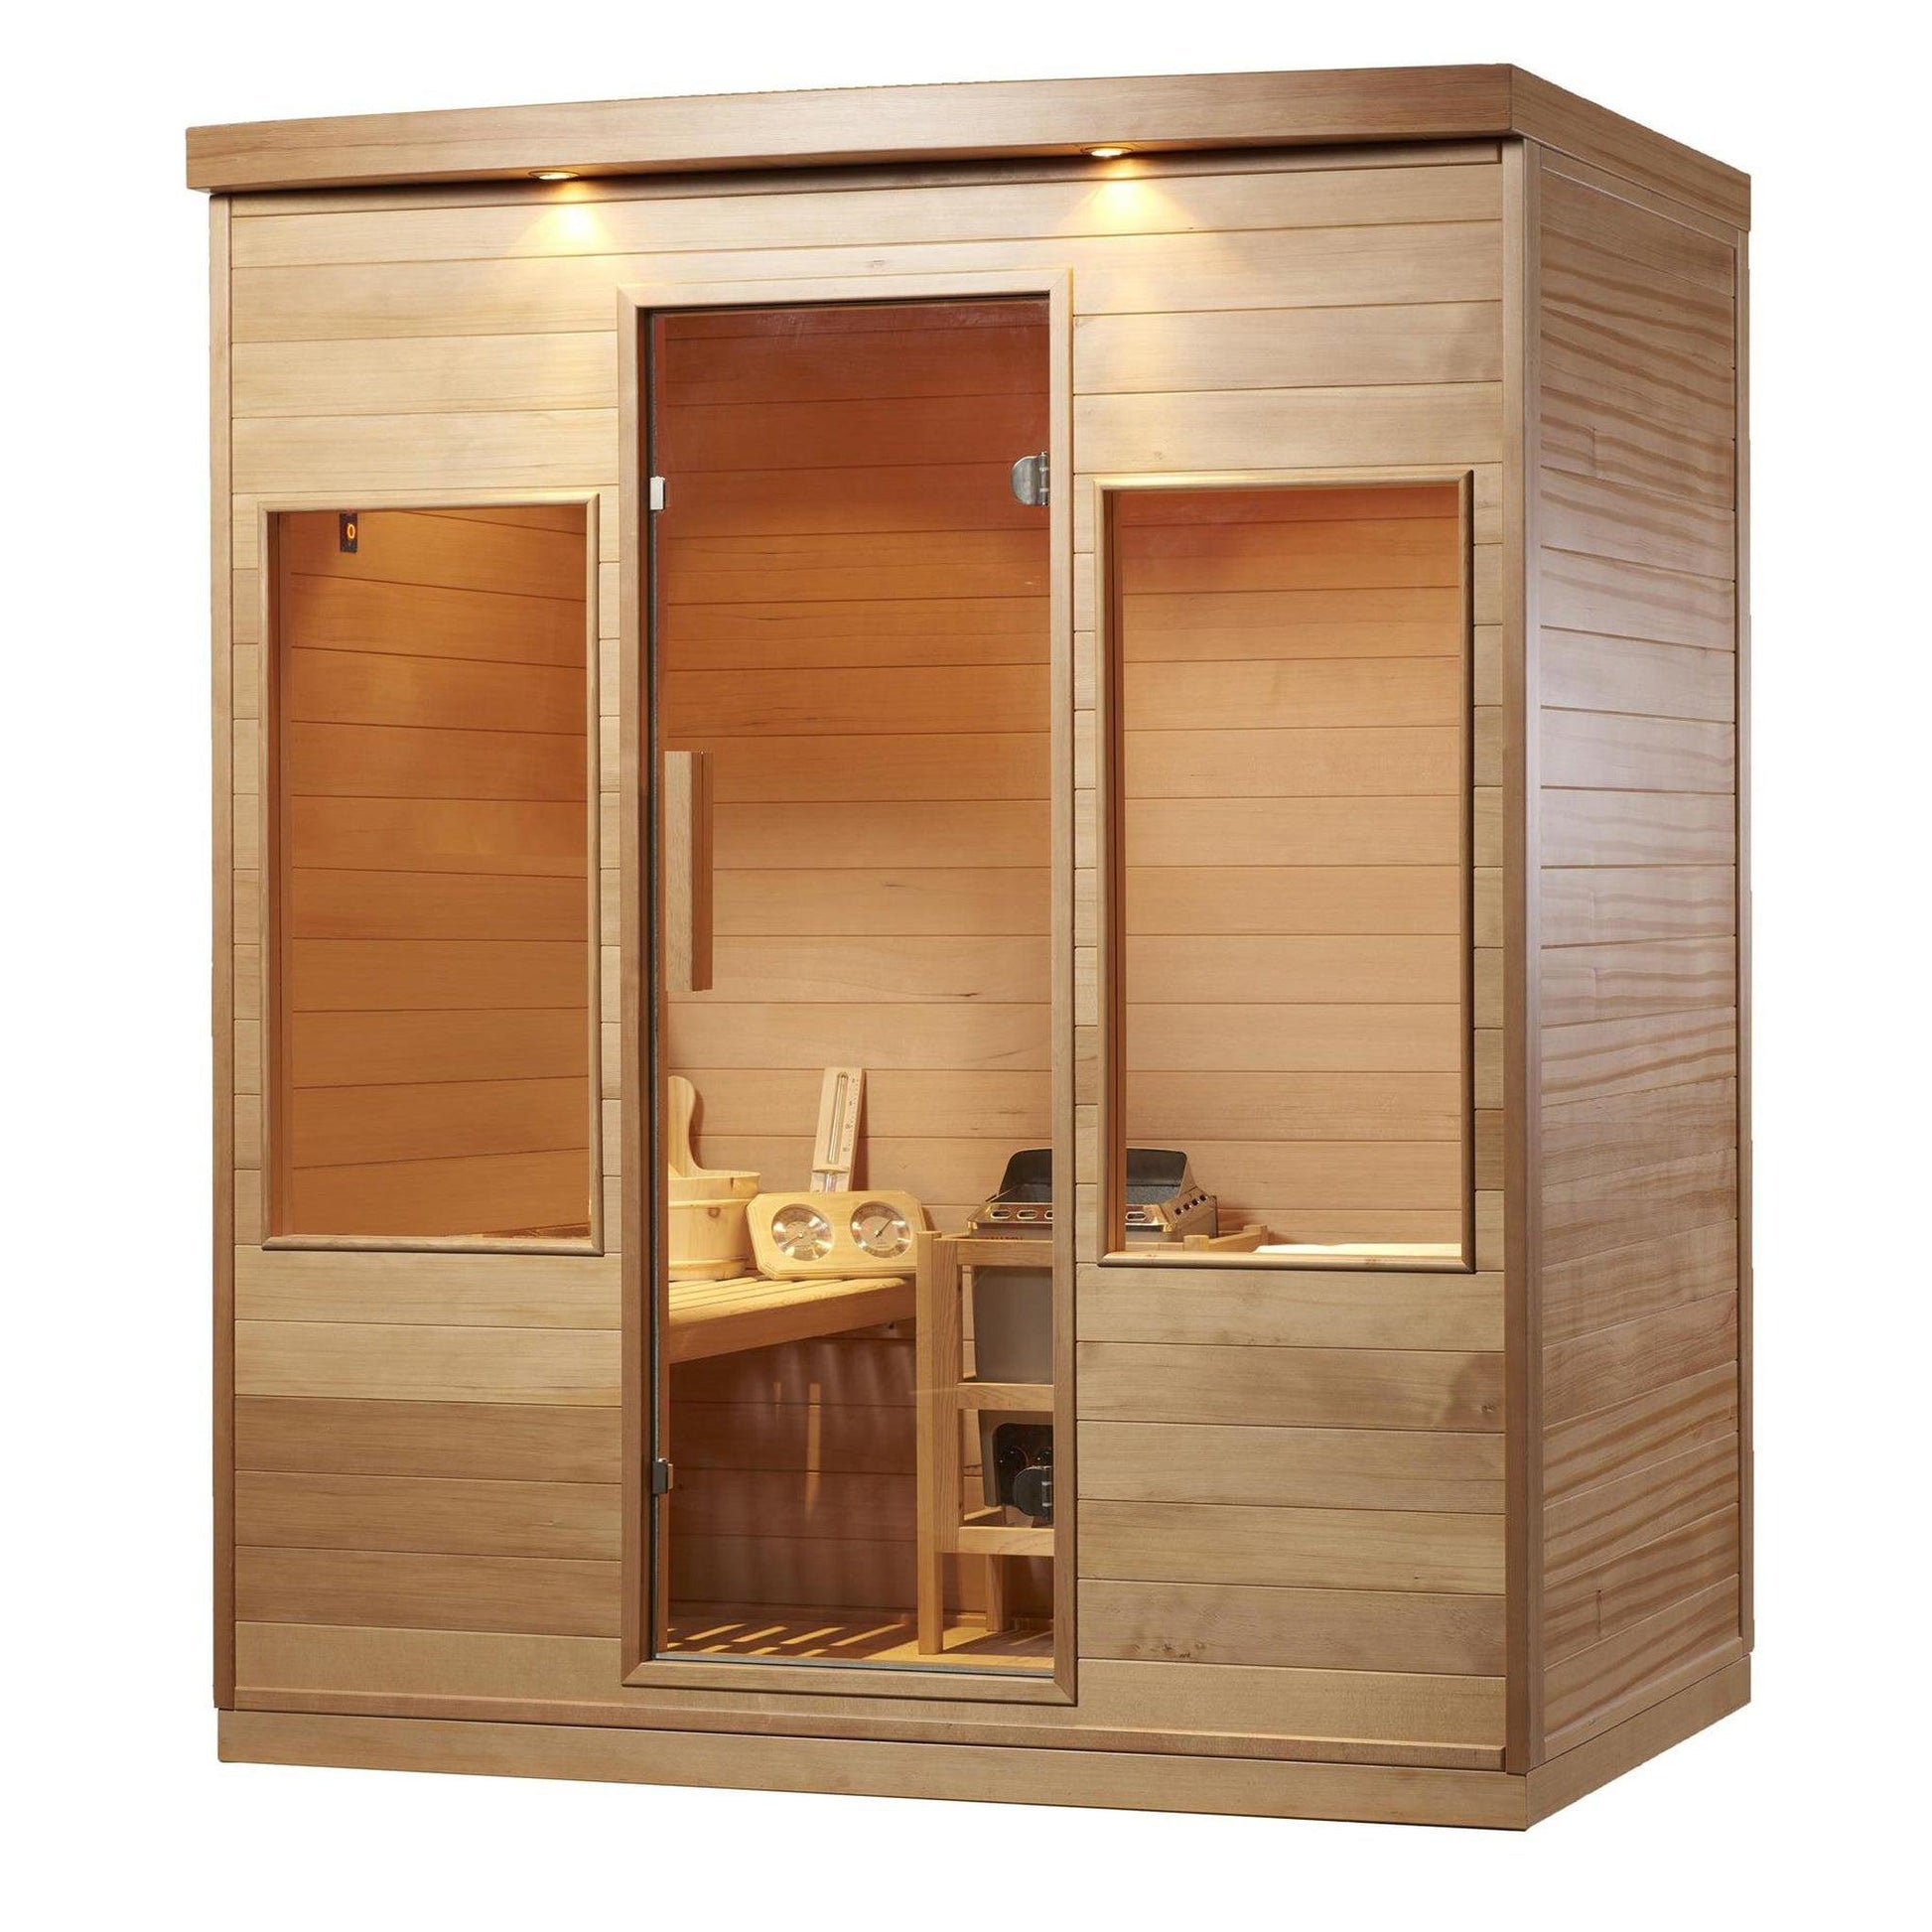 Aleko Canadian Hemlock 4-Person Indoor Wet Dry Steam Sauna With 4.5 kW ETL Certified Heater and Exterior Lights